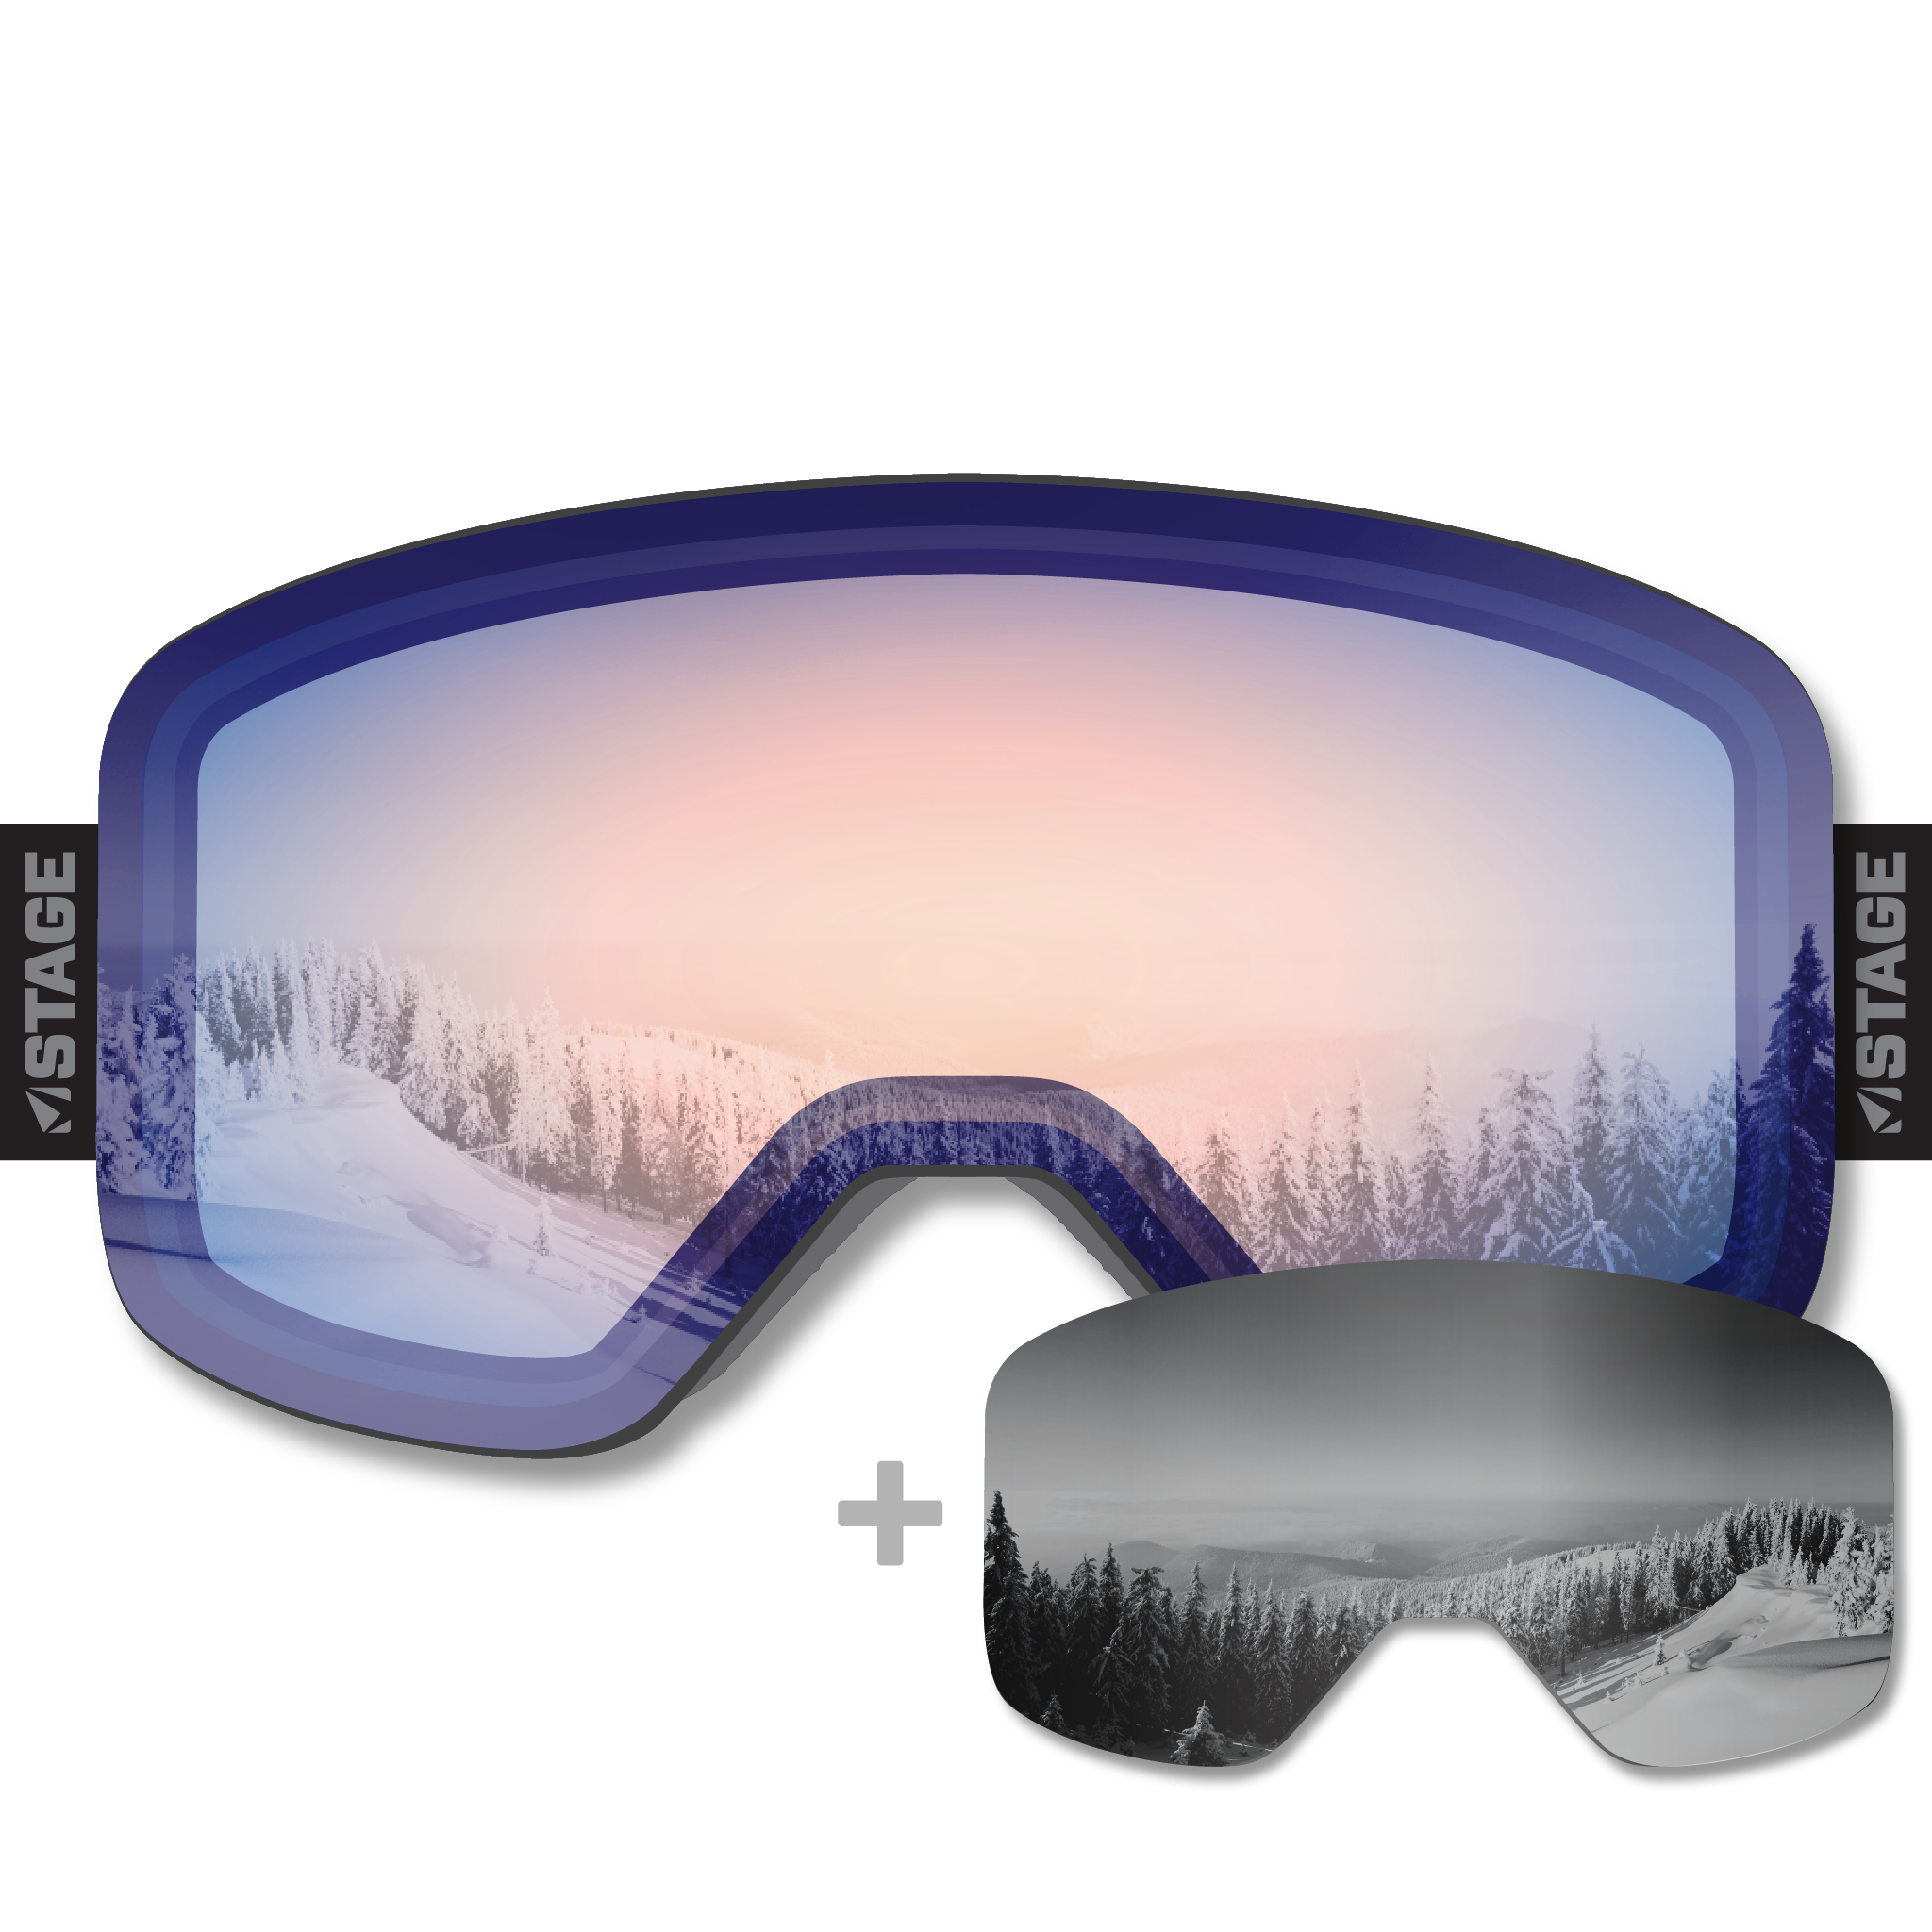 Arise & Ski Propnetic - Magnetic Ski Goggle + Bonus Lens